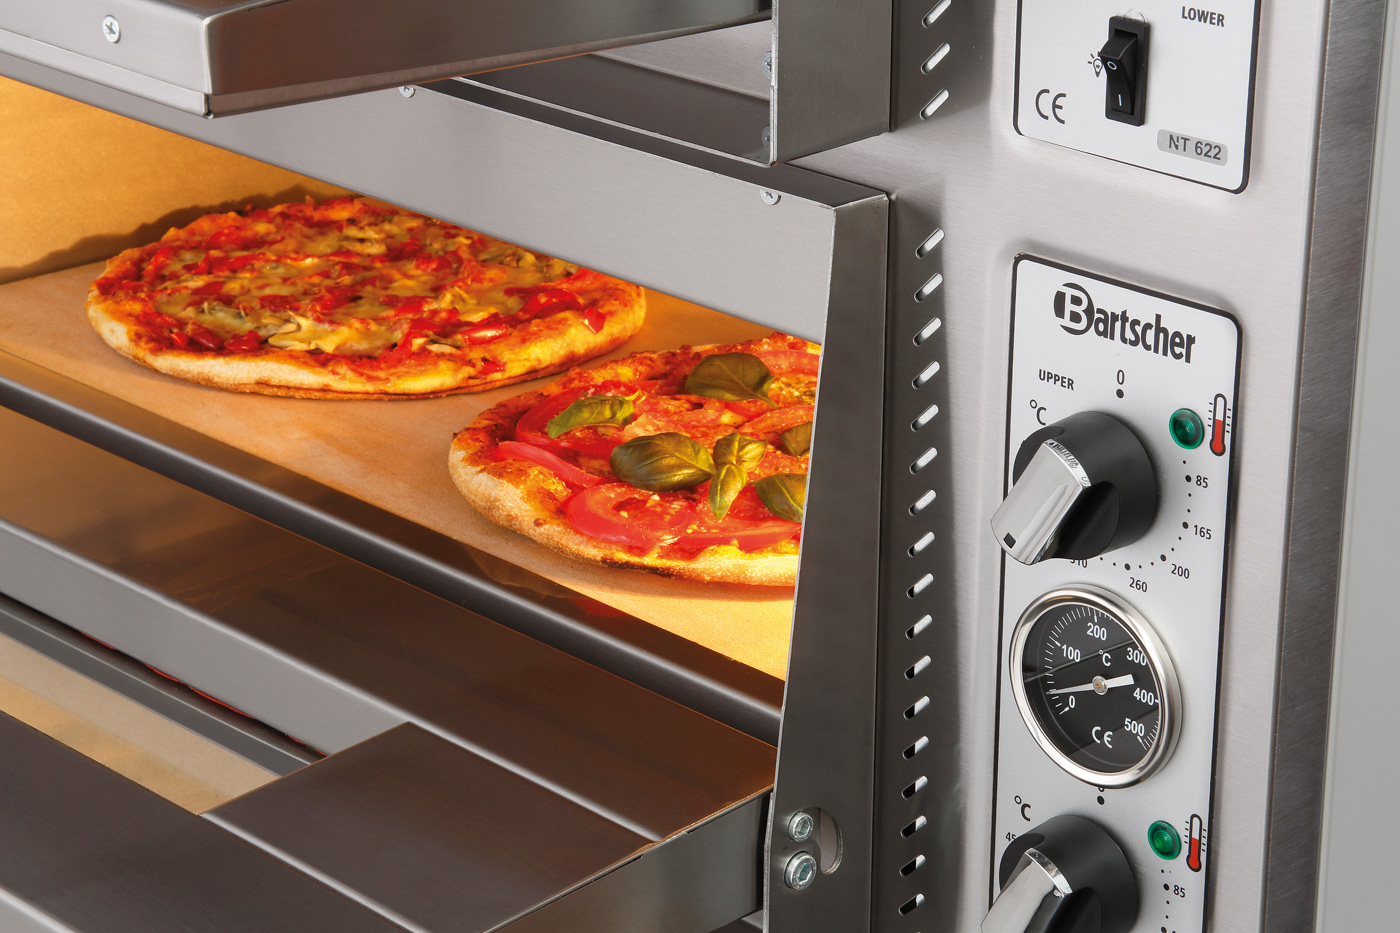 Bartscher Pizzaofen NT 622 | Spannung: 400 V |Maße: 88,5 x 79 x 71,0 cm. Gewicht: 102,8 kg